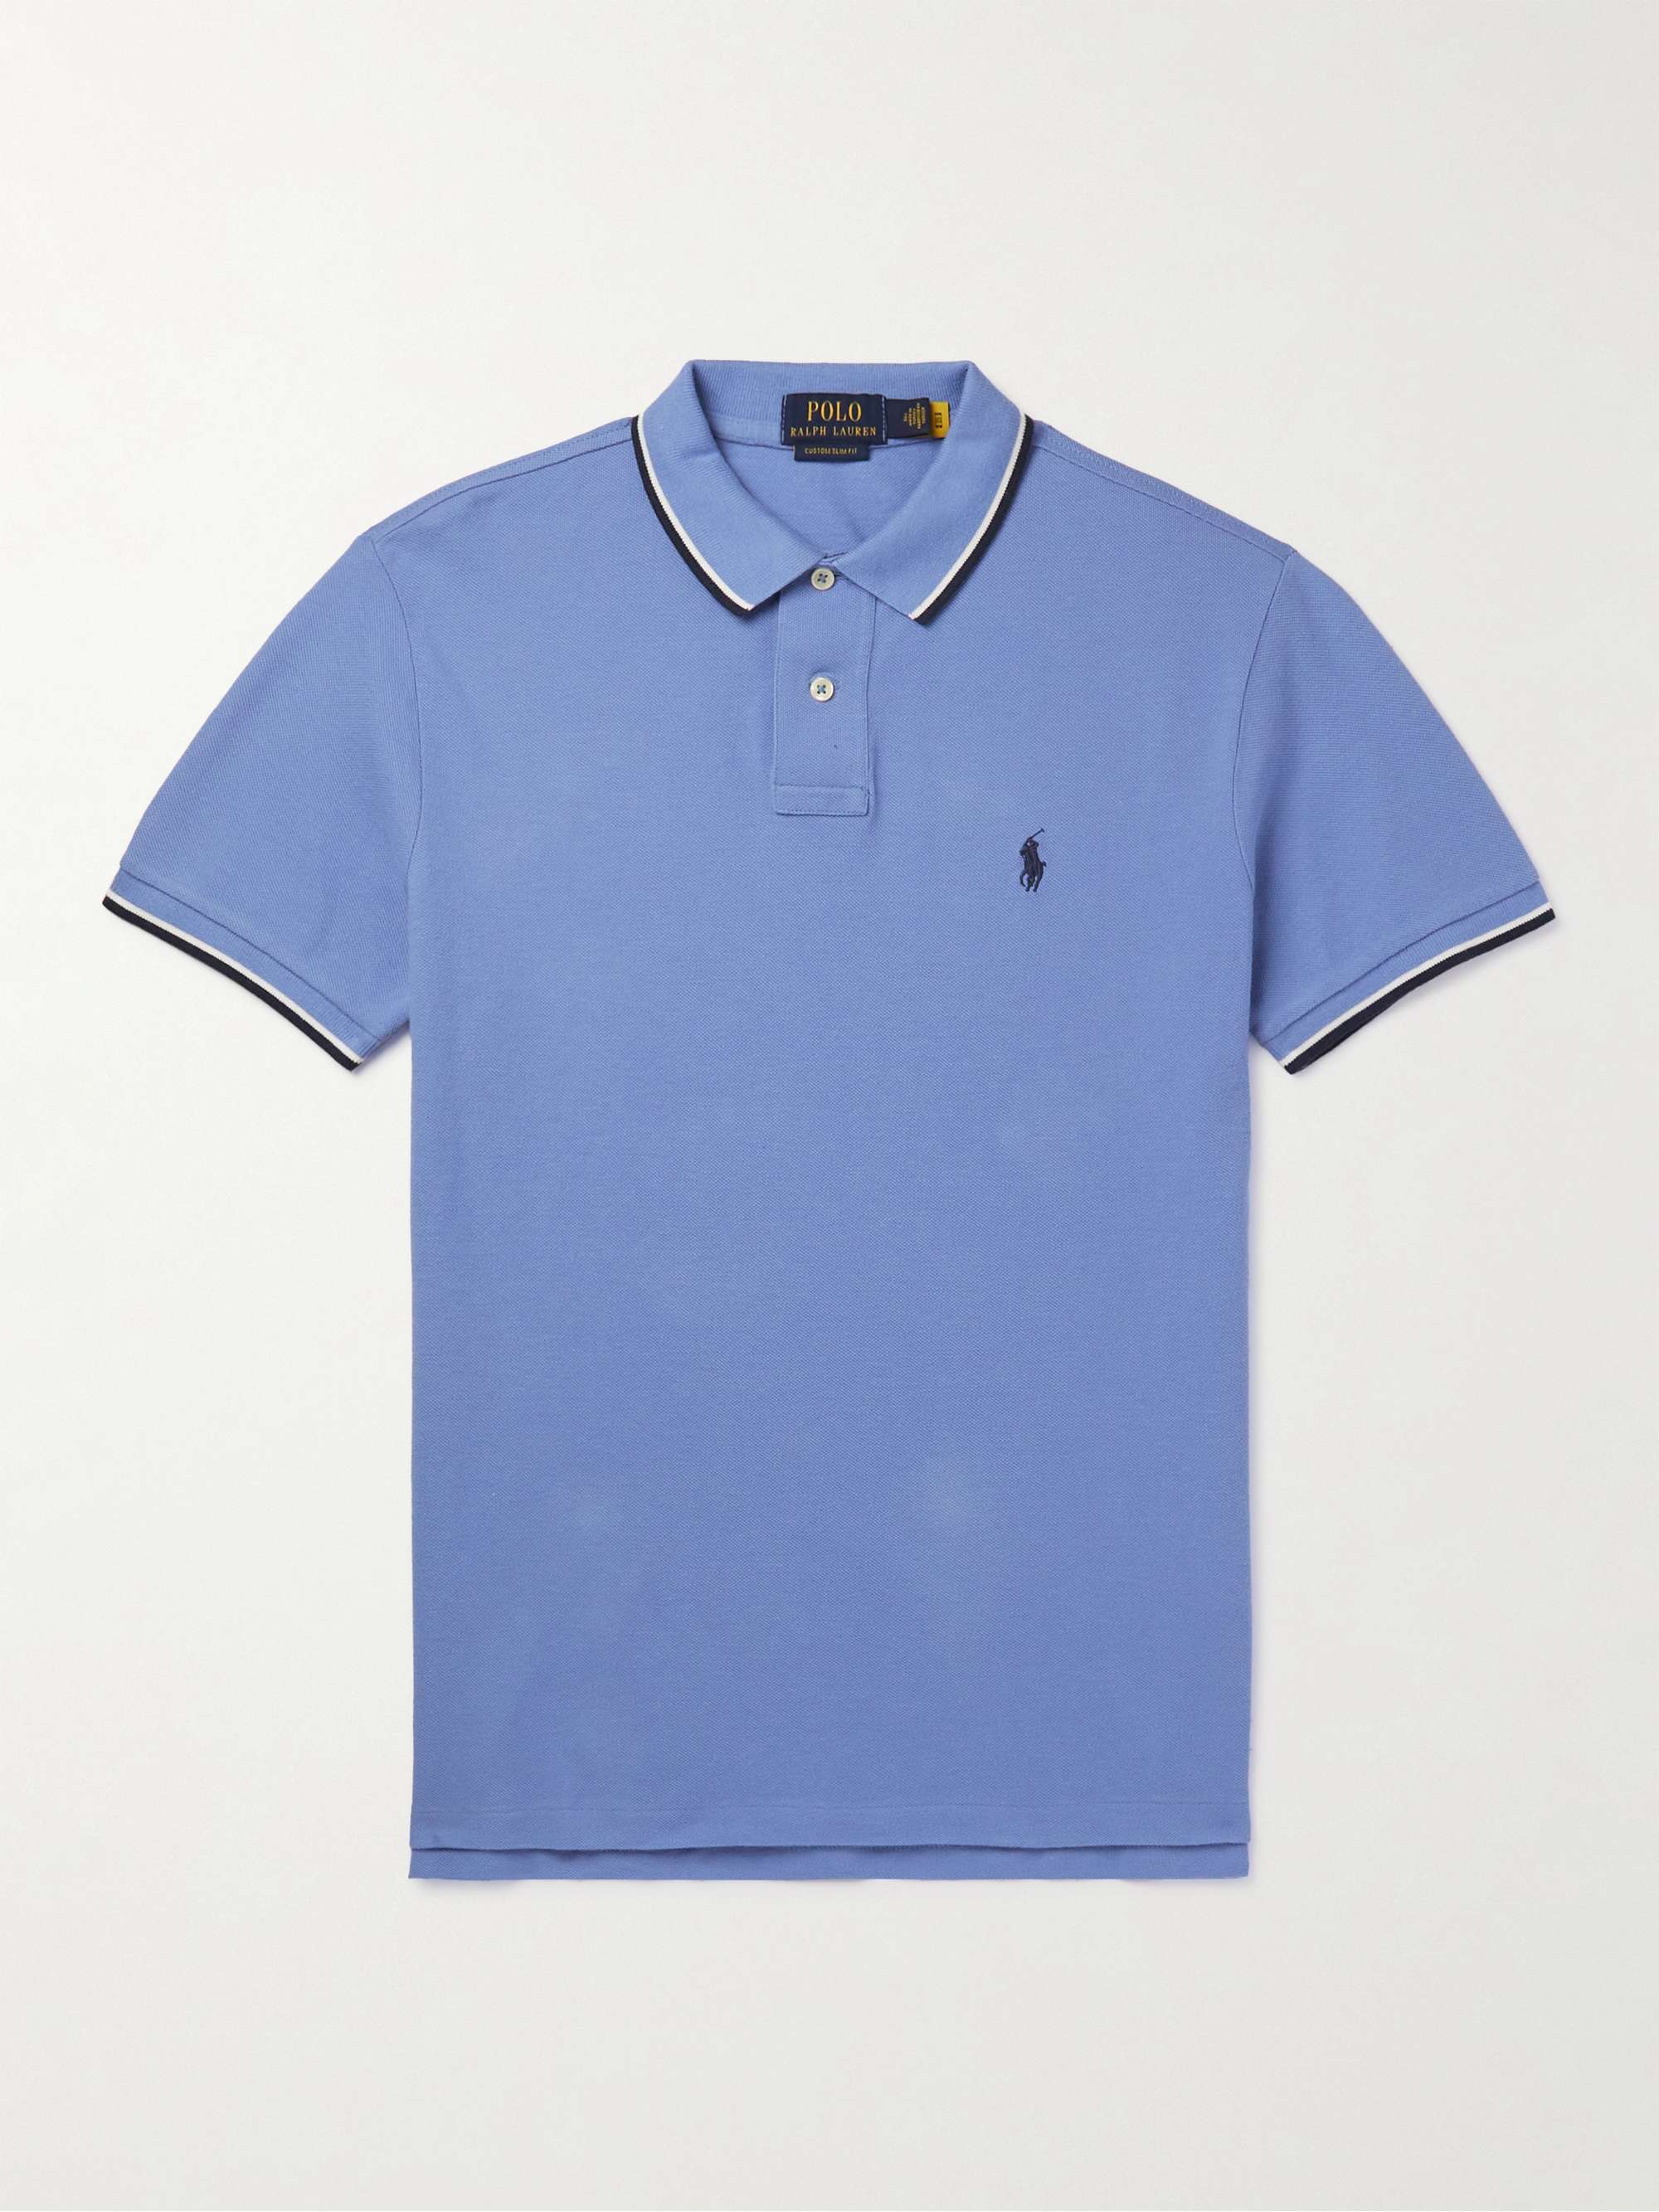 POLO RALPH LAUREN Contrast-Tipped Cotton-Piqué Polo Shirt | MR PORTER